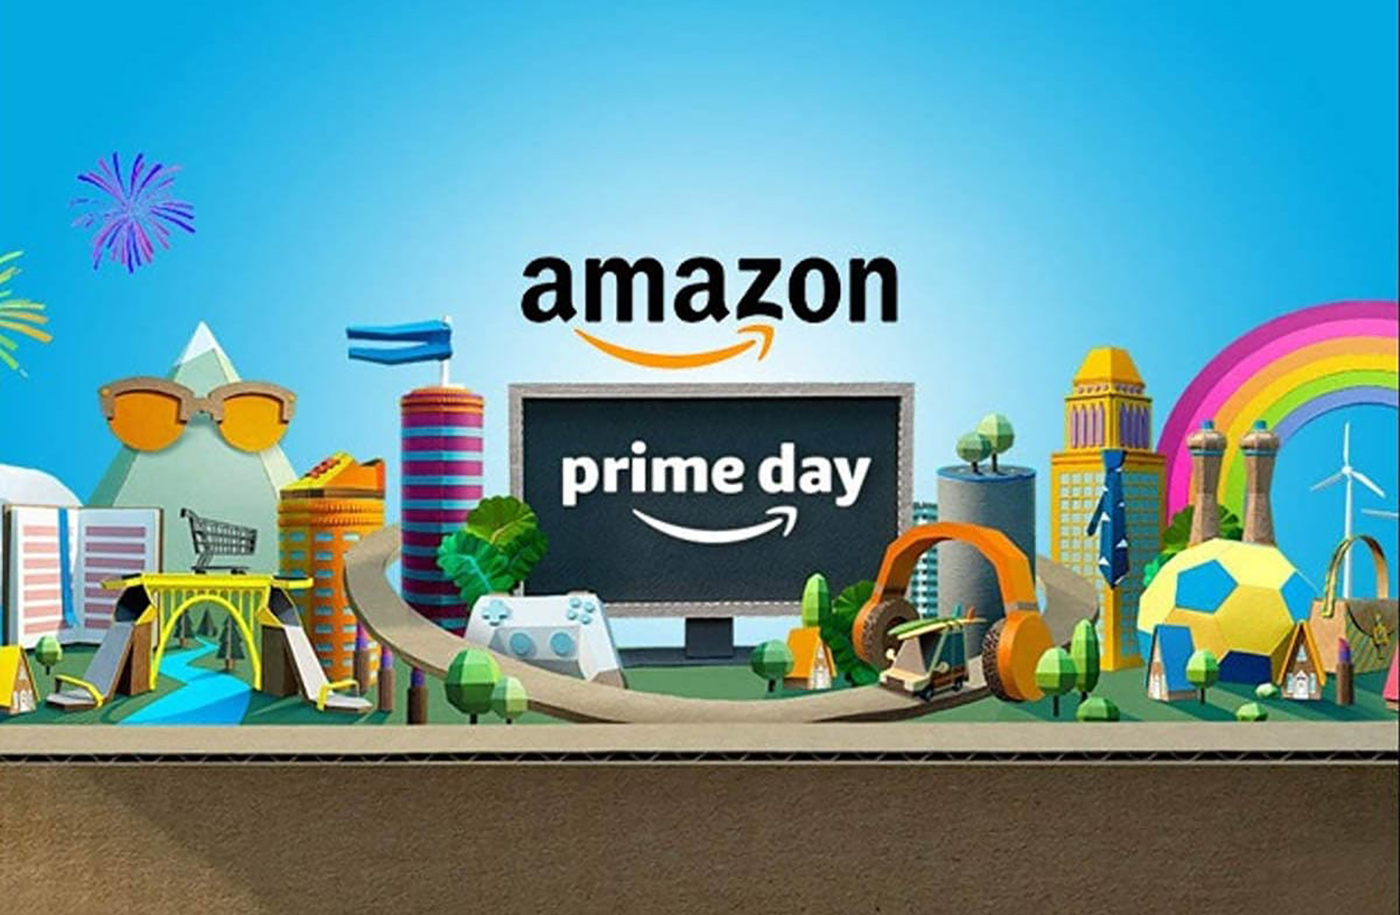 Amazon Prime Day Logo Amazon Prime Day Is Amazon Prime worth it